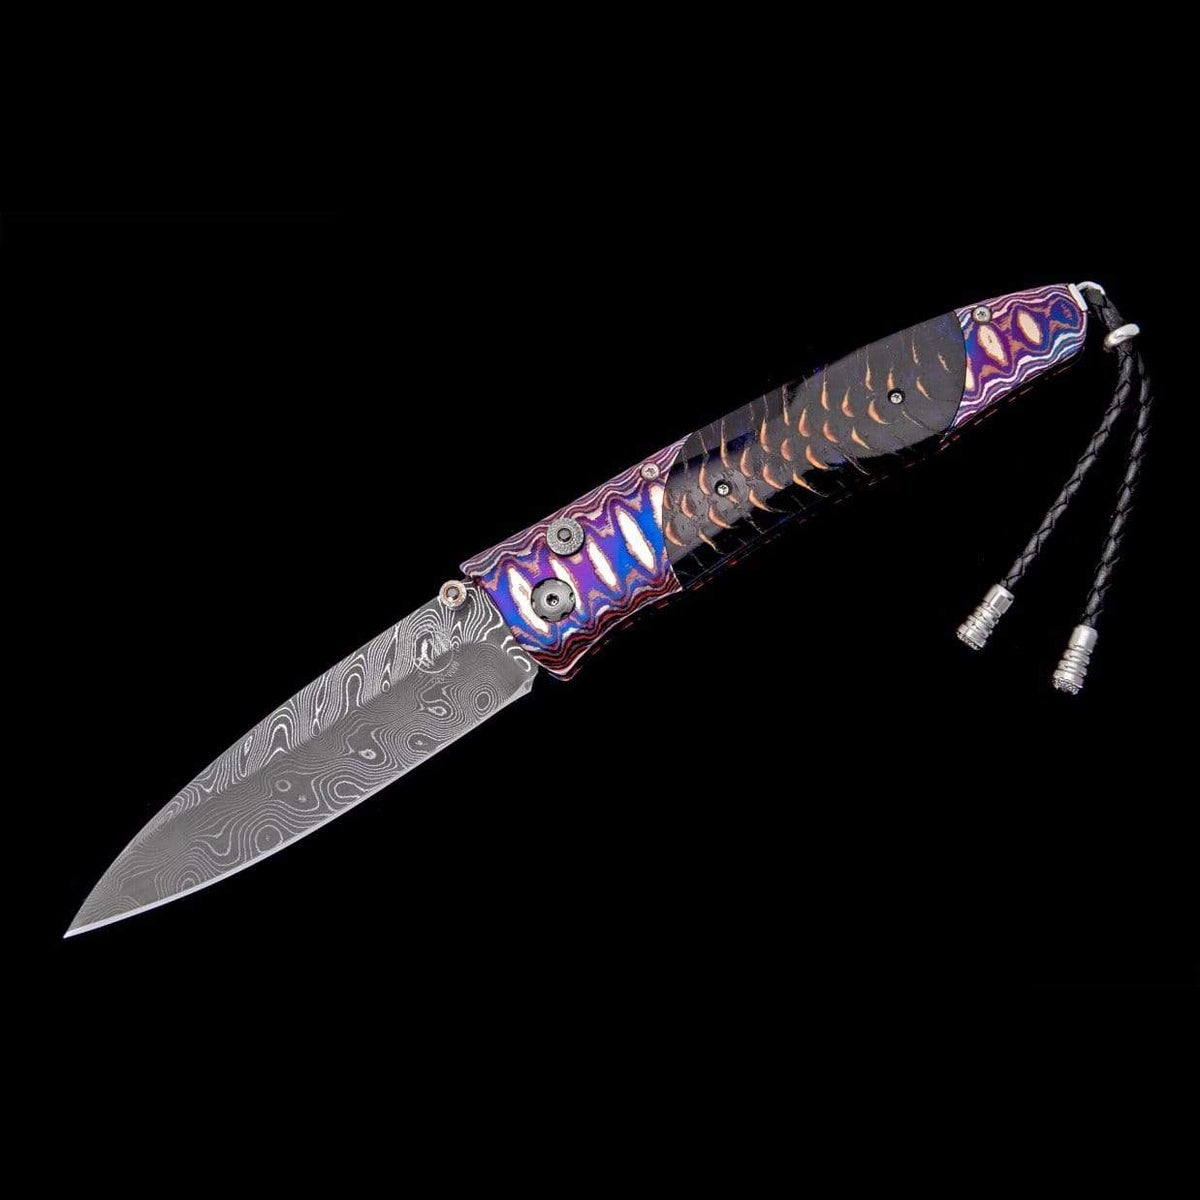 Gentac Indigo Sky Limited Edition Knife - B30 INDIGO SKY